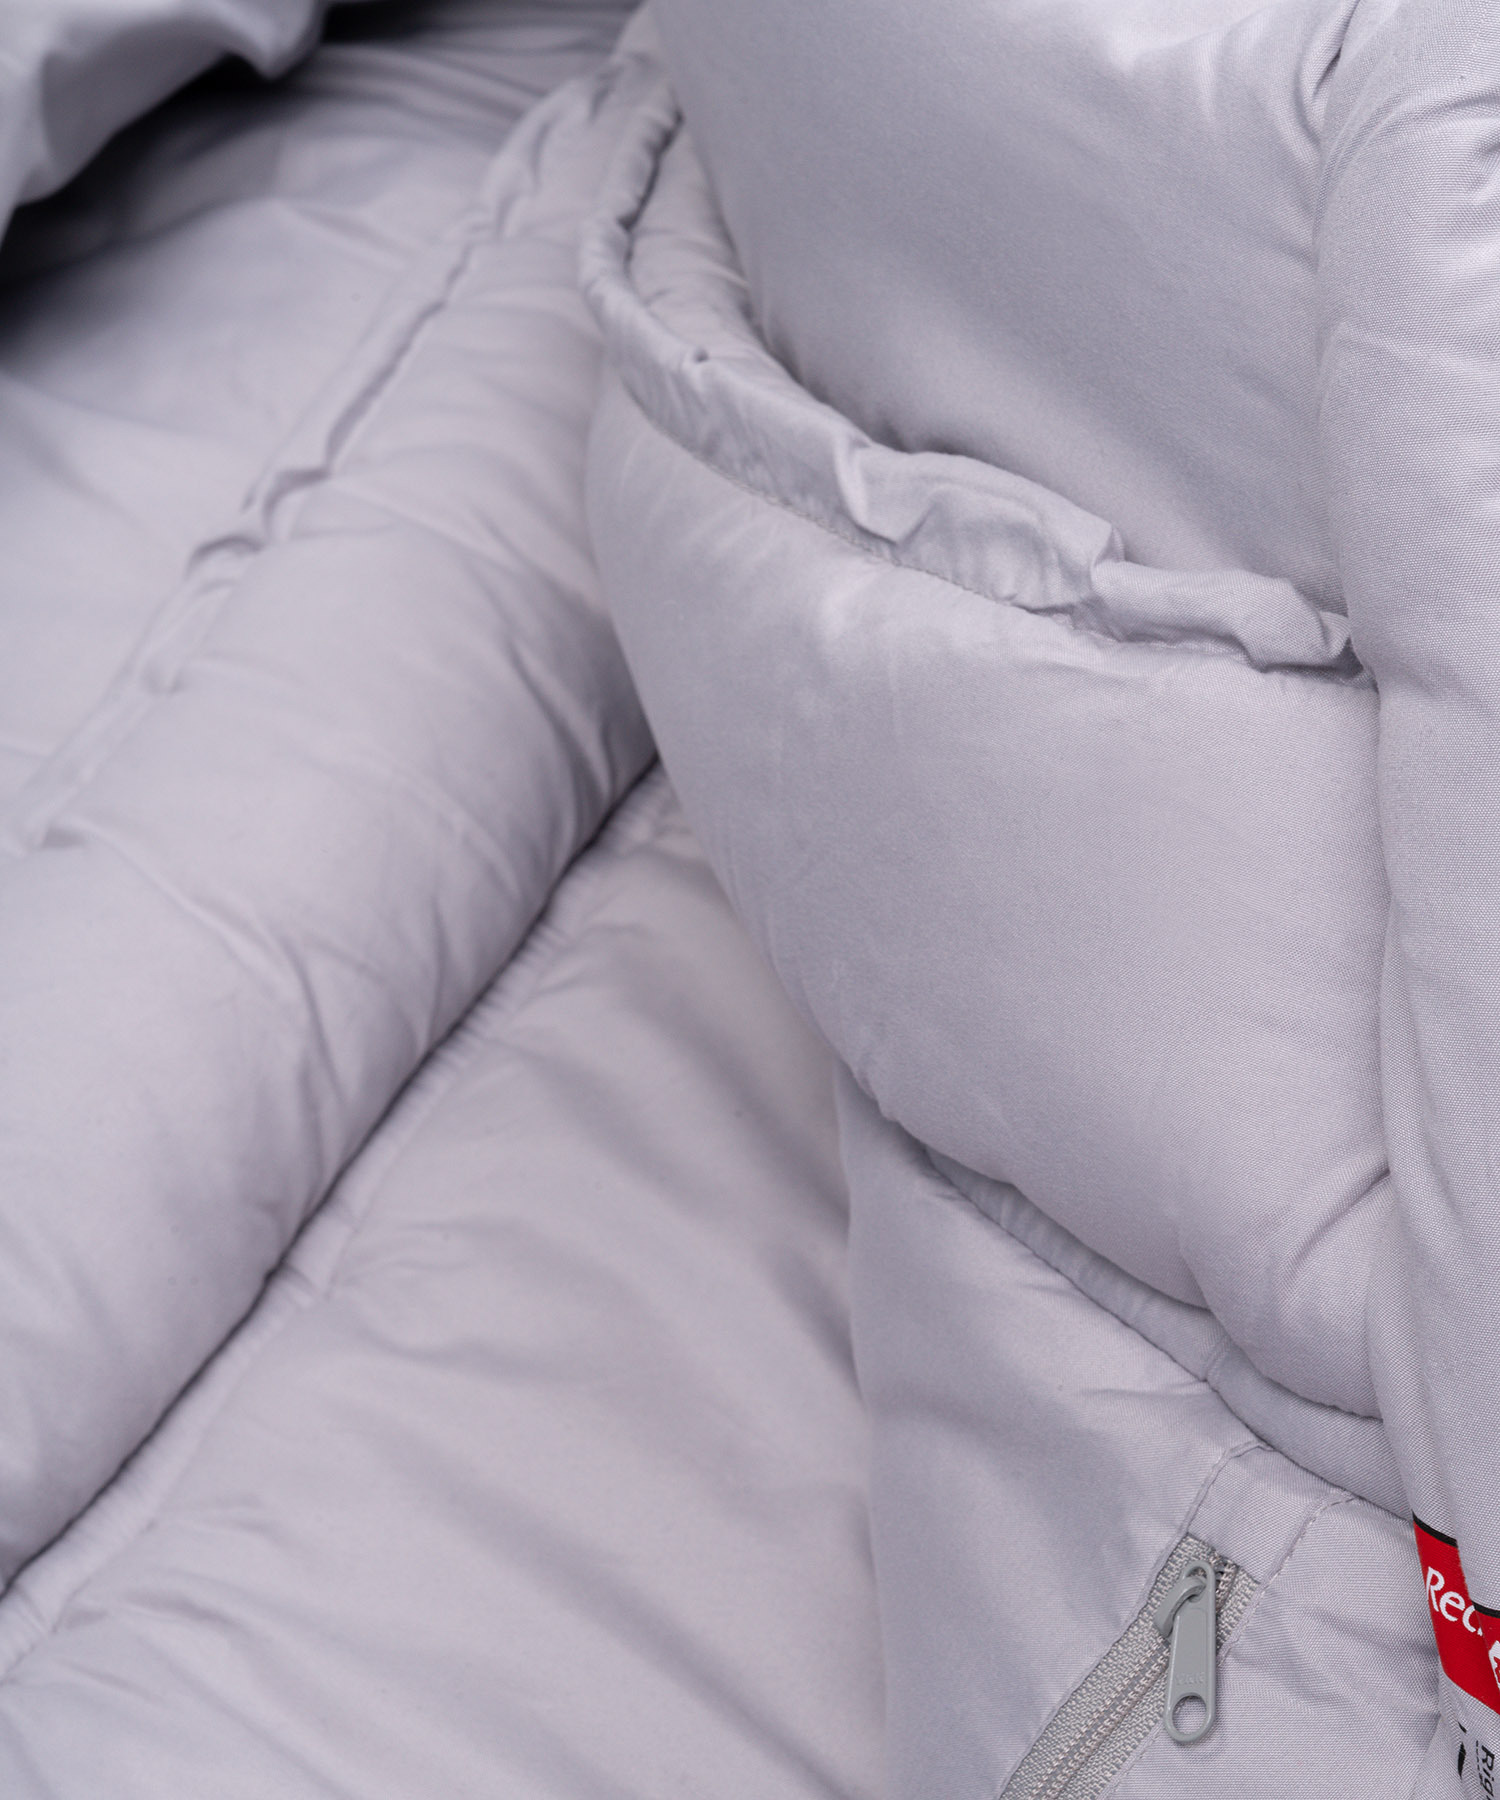 Теплый спальный мешок синтетический правый Red Fox Explorer -40 (комфорт -16)